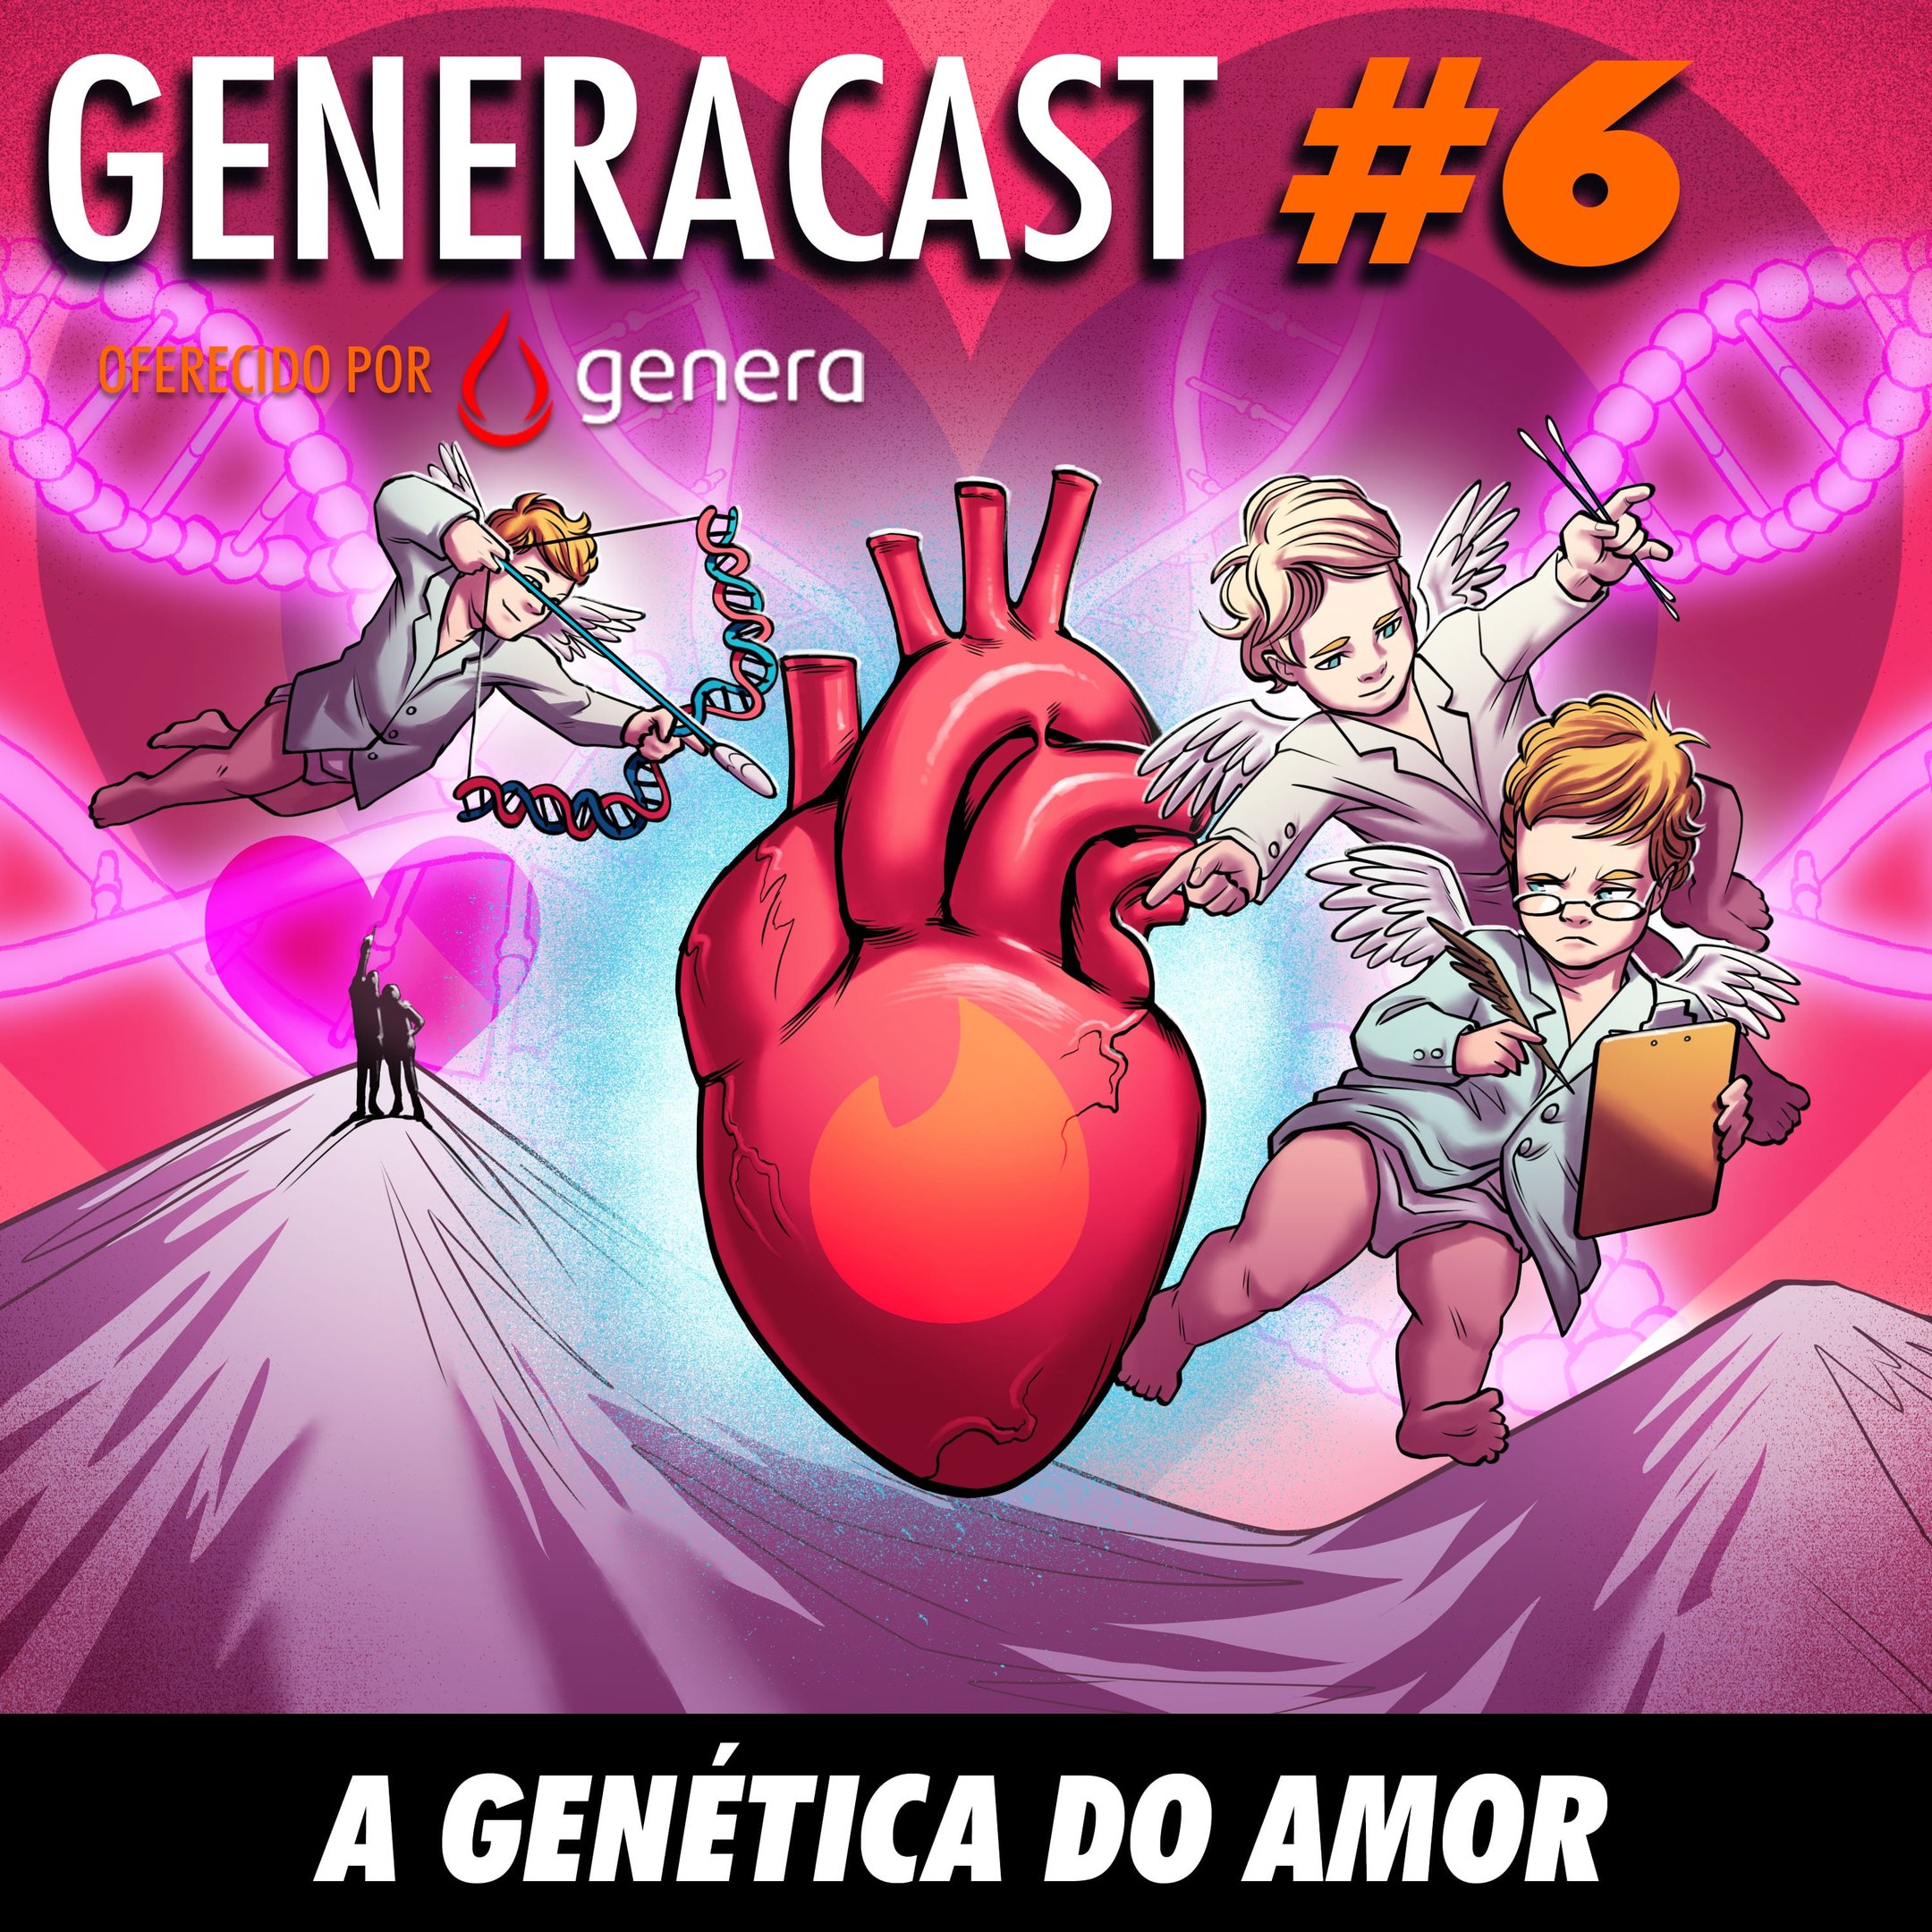 Generacast 06 - A genética do amor